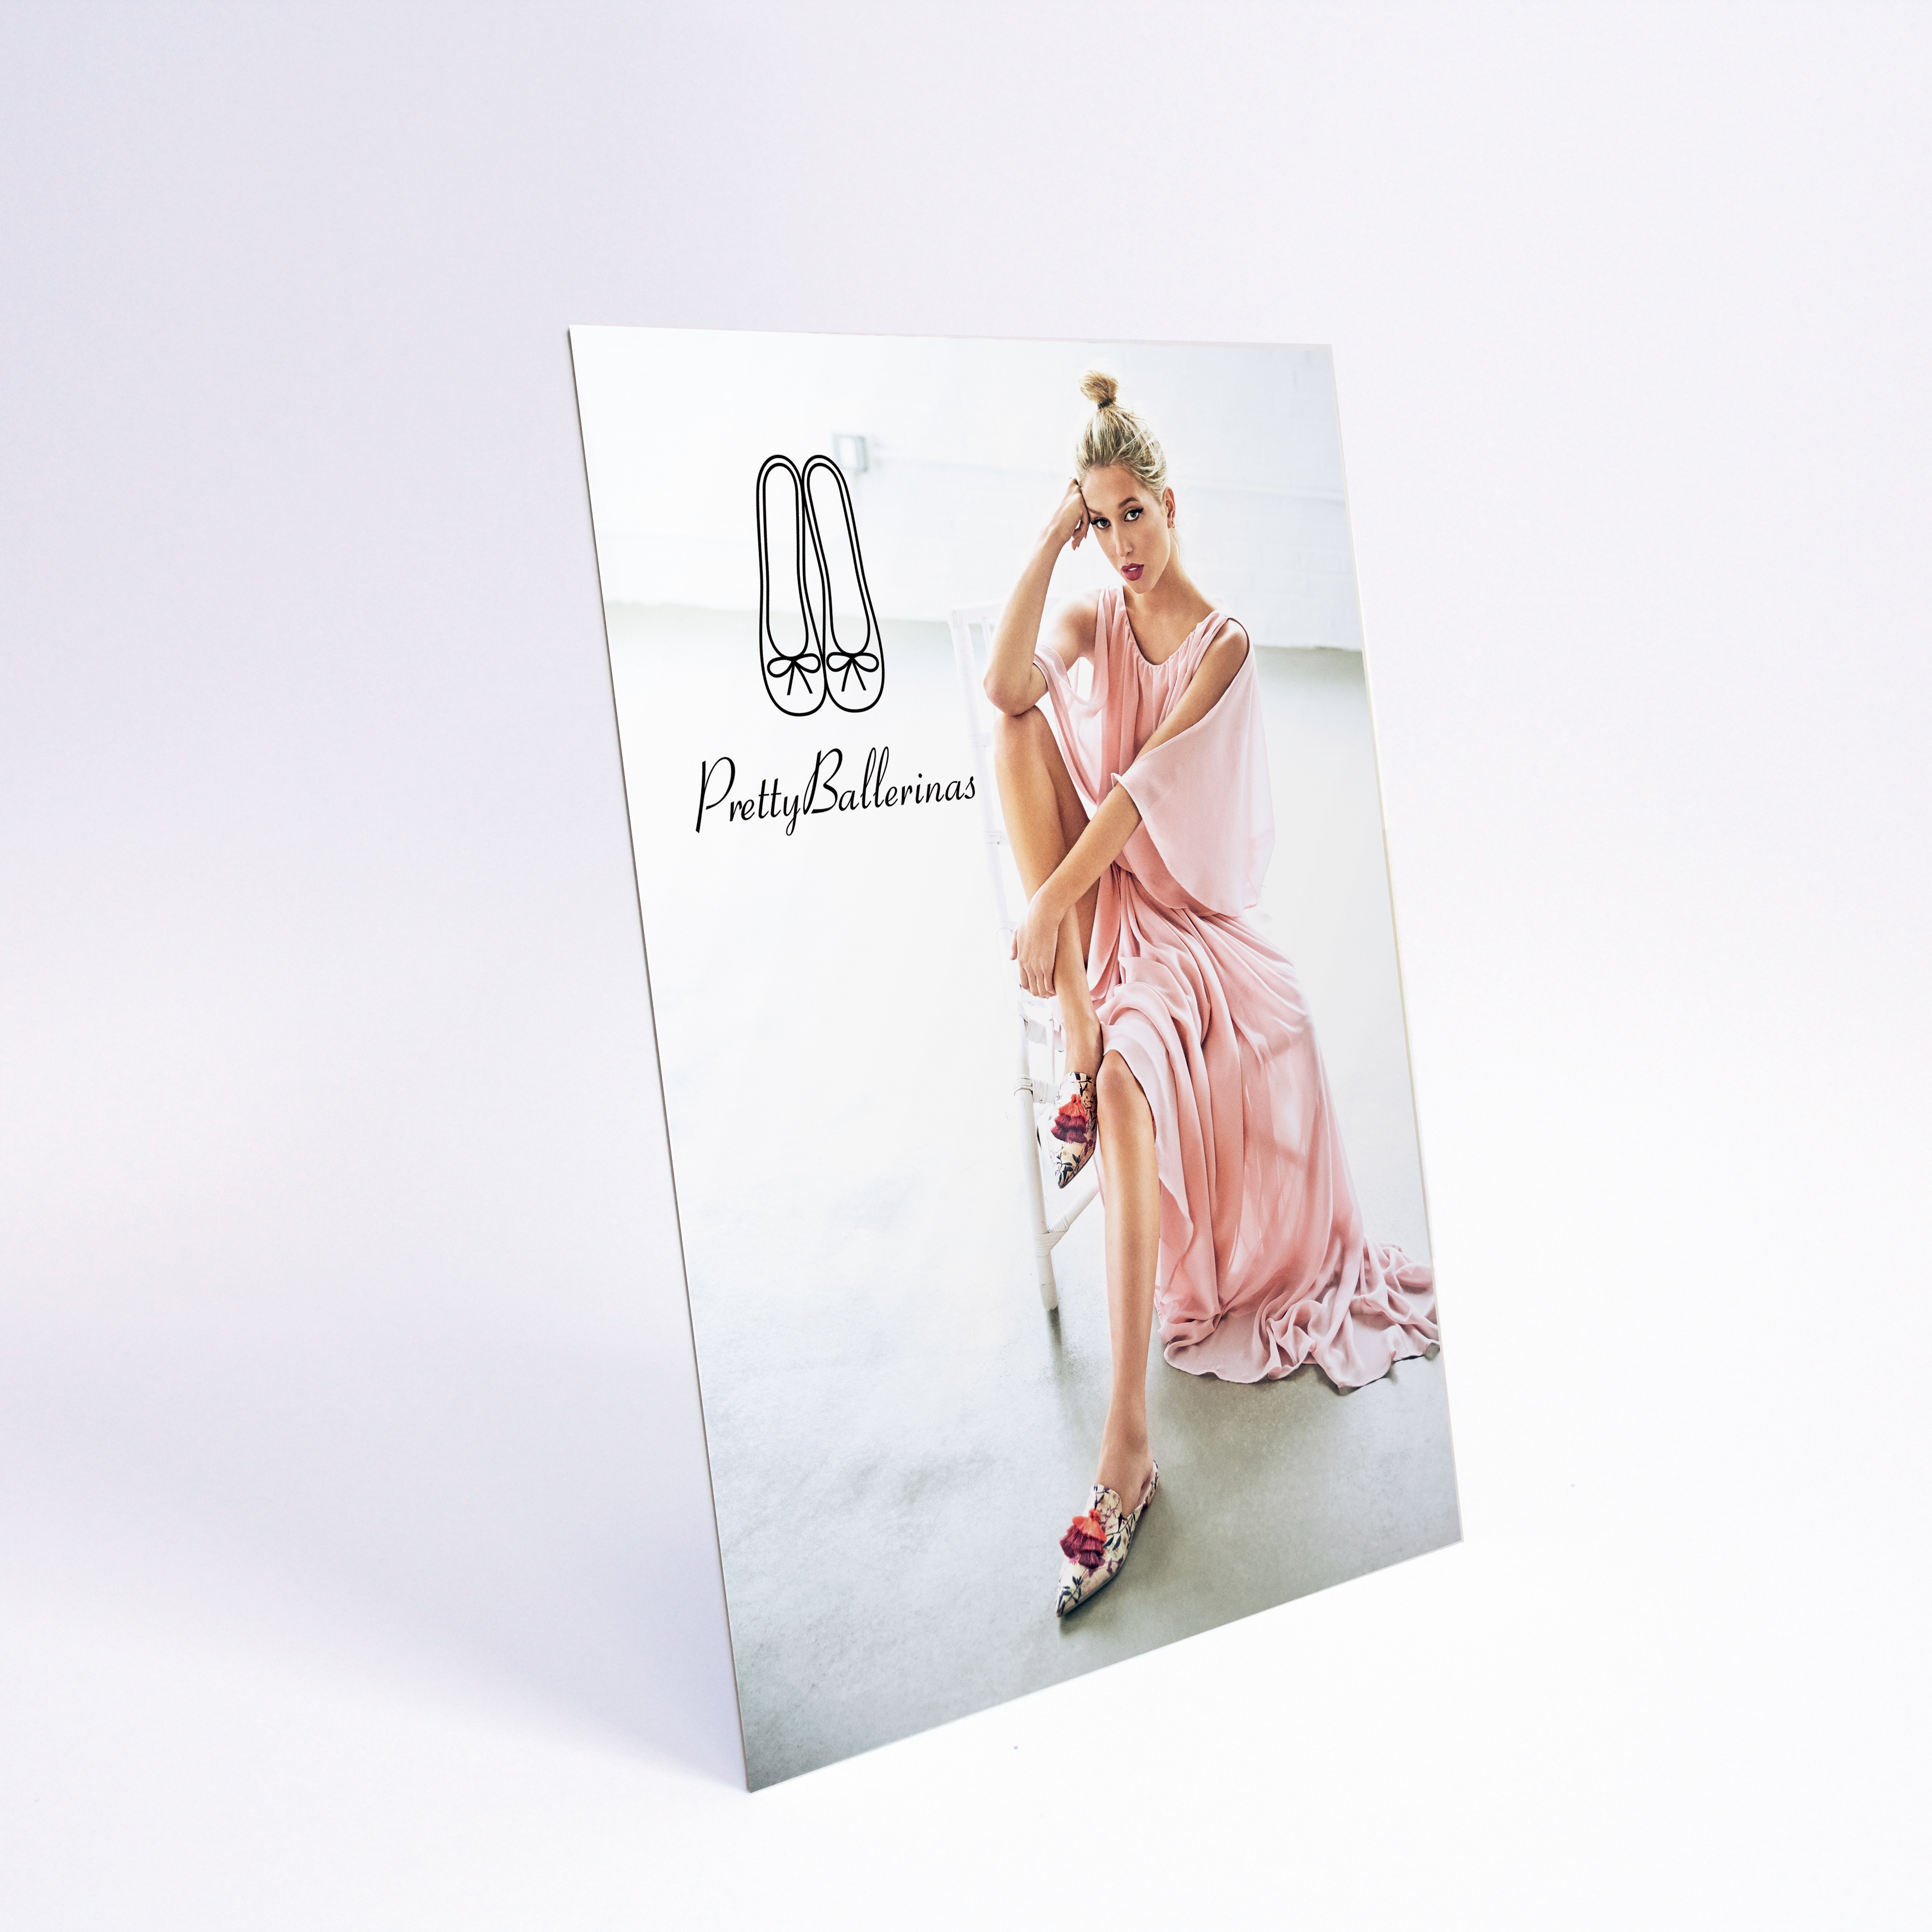 Brintel display simple con peana ballerinas diseño gráfico artes gráficas imprenta etiquetas bolsas packaging display imagen plv